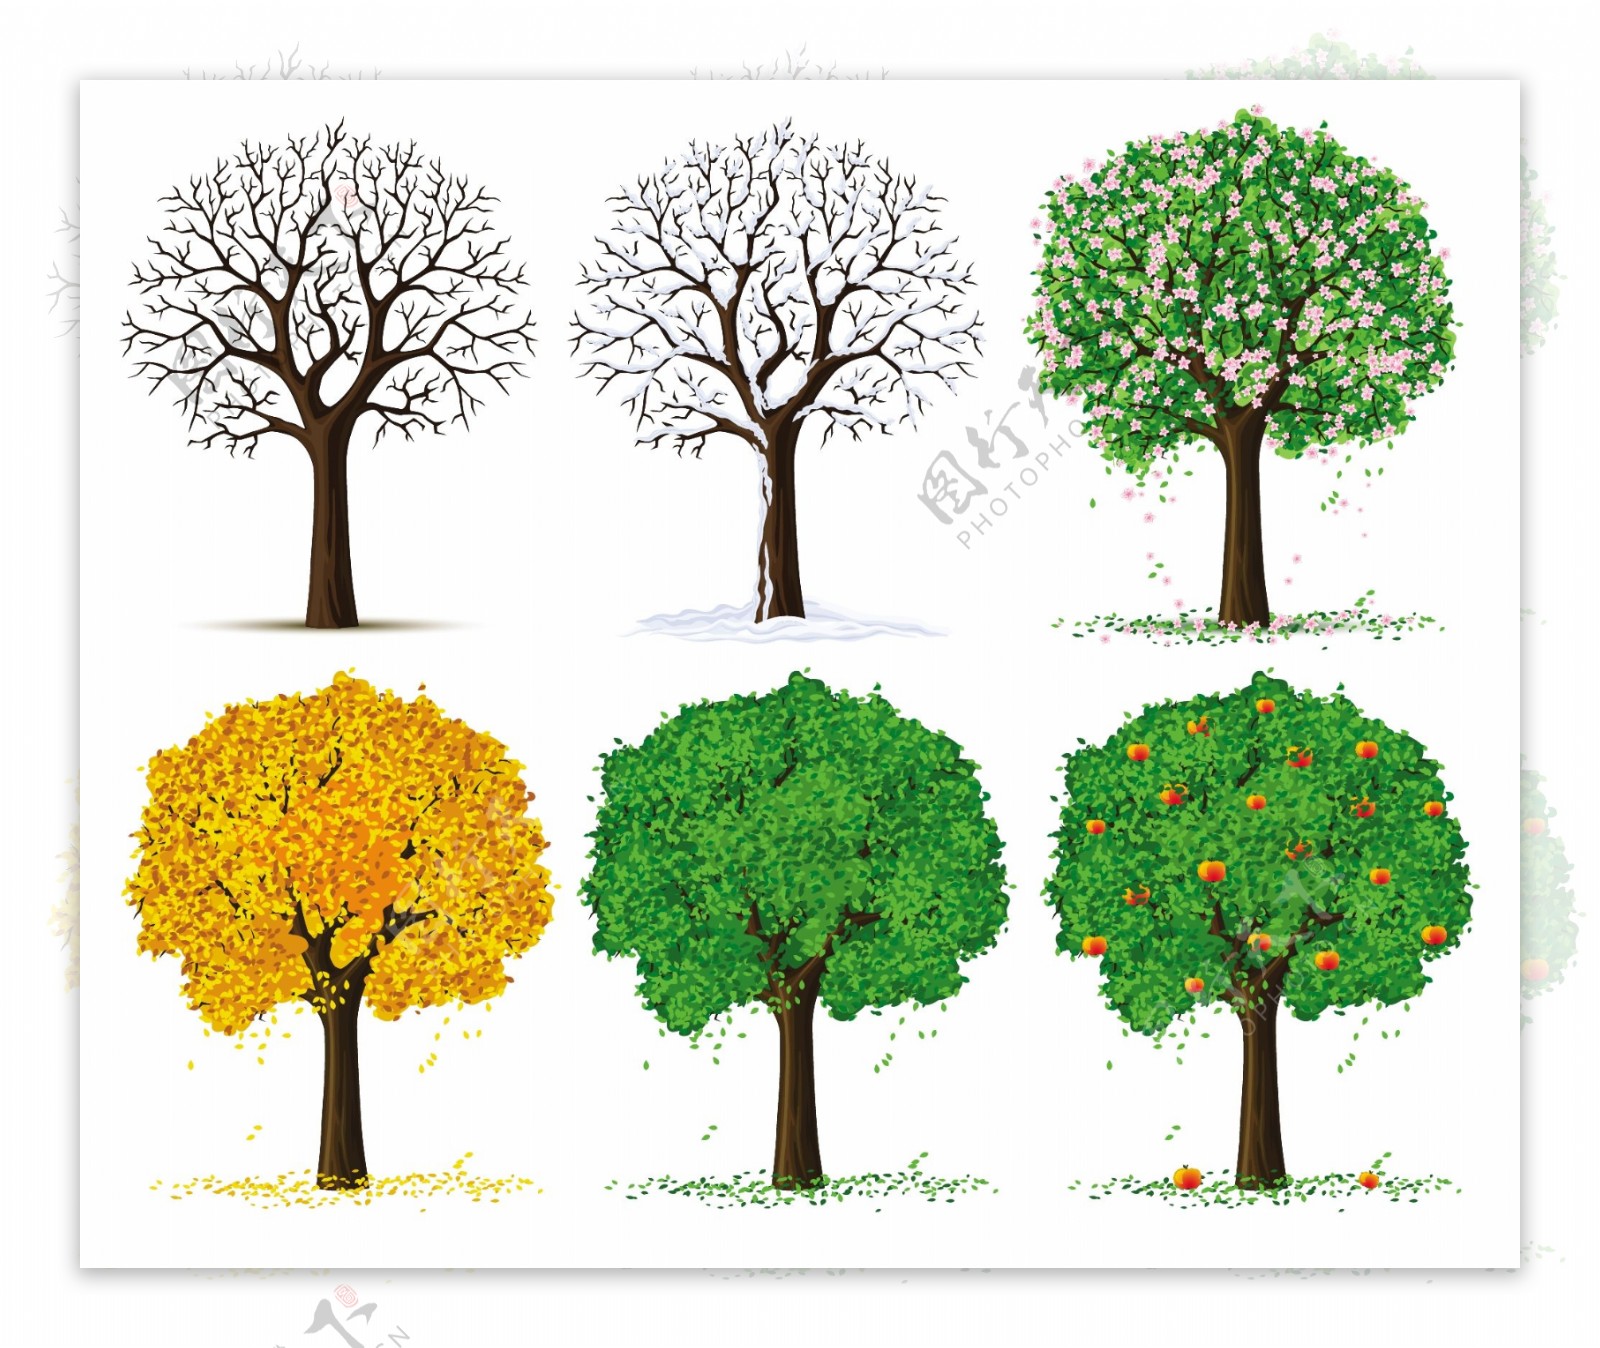 四个季节的树